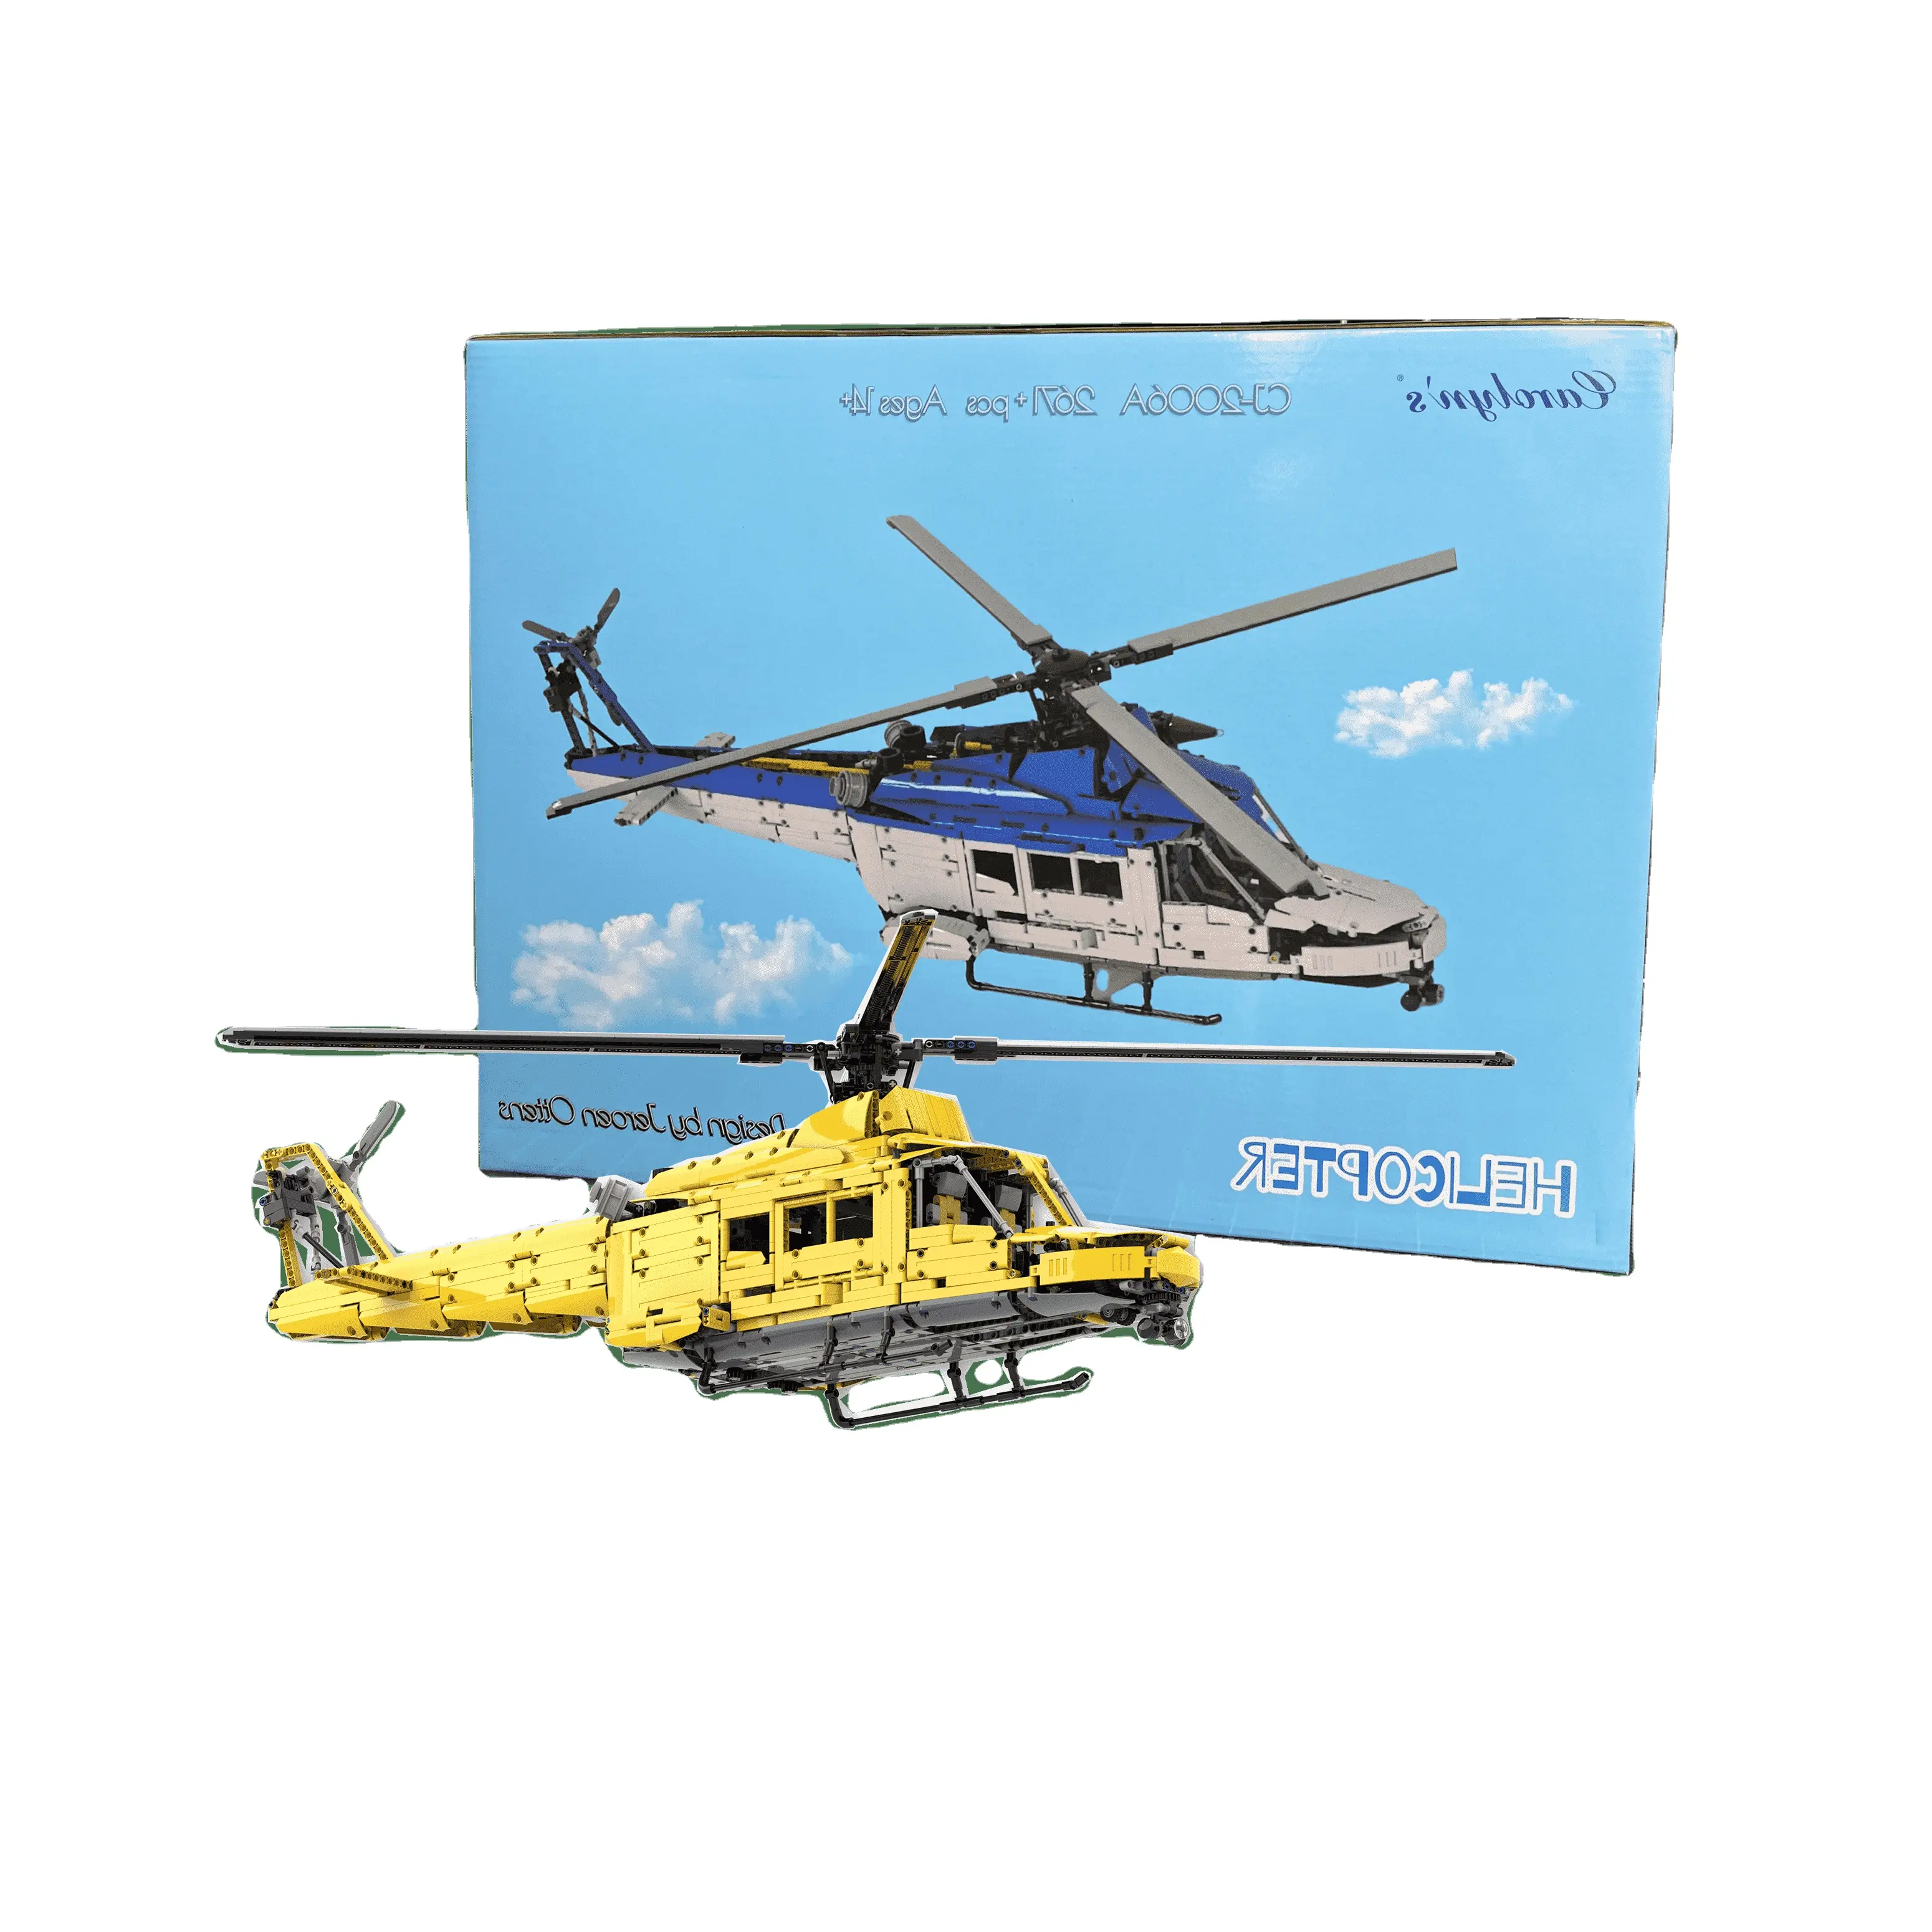 Il Design dell'elicottero CJ-2006 di Carolyn di Jeroen Ottens MOC-56765 Kit tecnico per costruzione di auto giocattolo giallo e blu per ragazzo